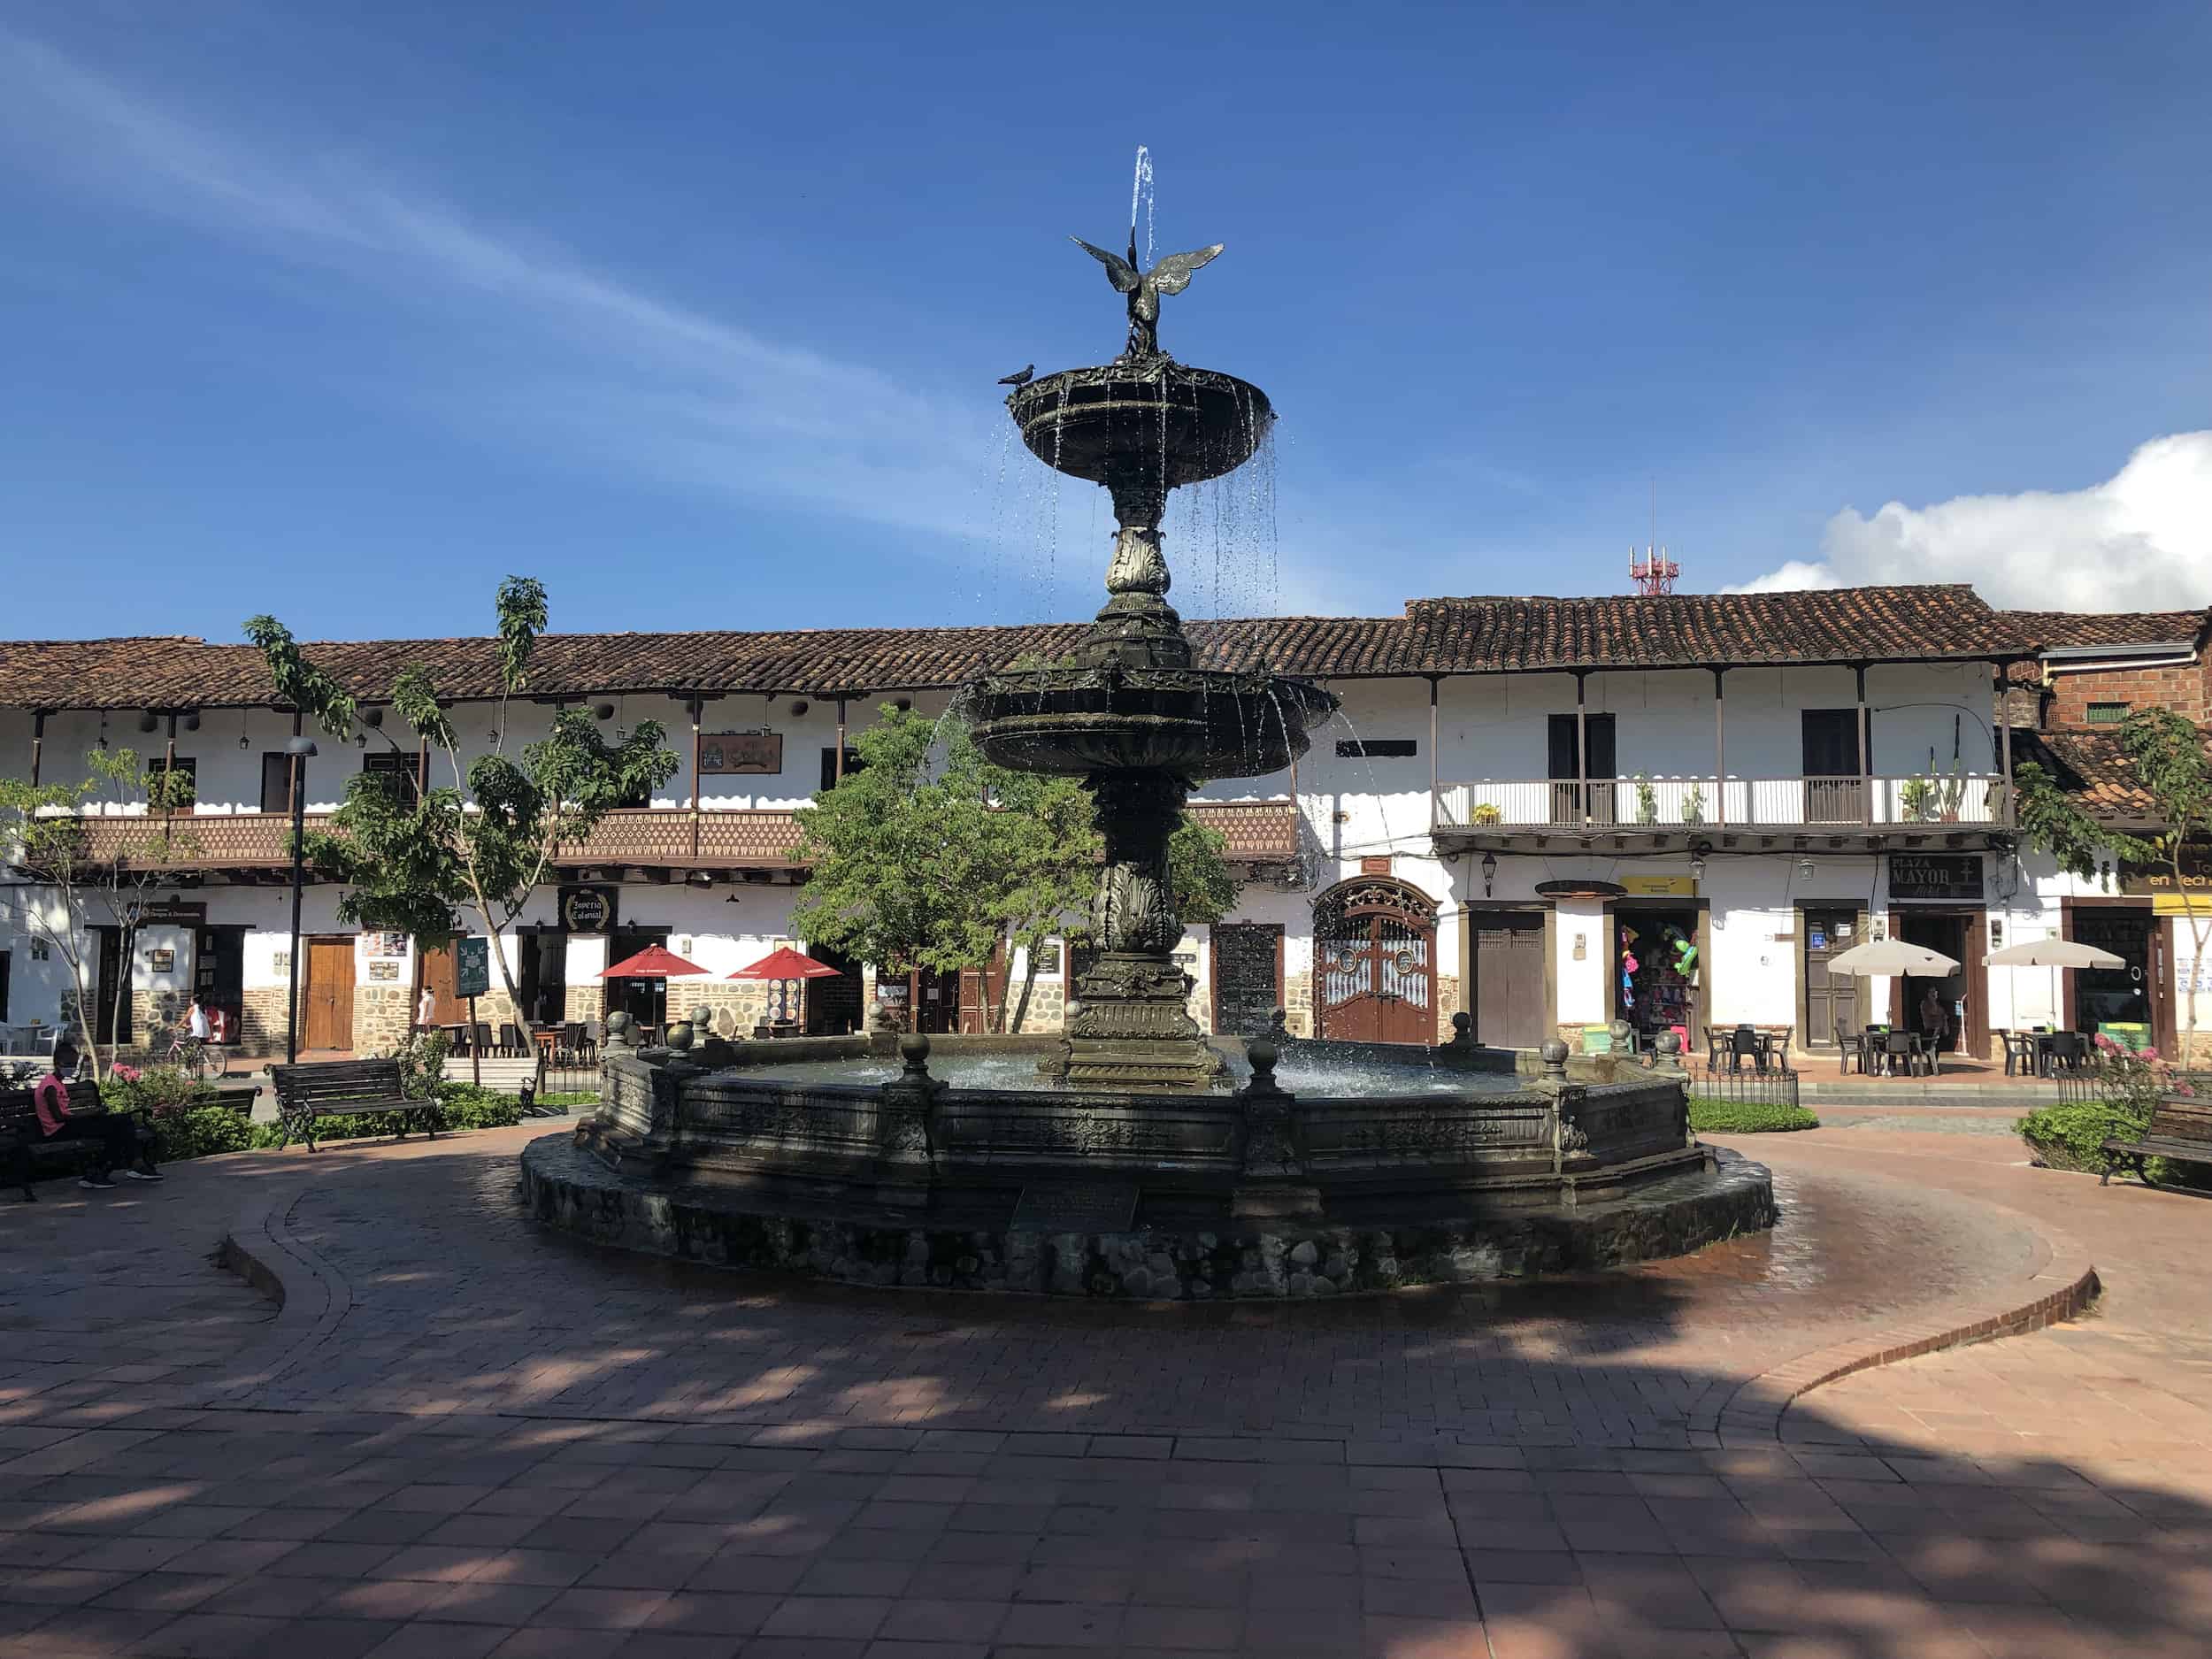 Fountain on Plaza Mayor Simón Bolívar in Santa Fe de Antioquia, Colombia